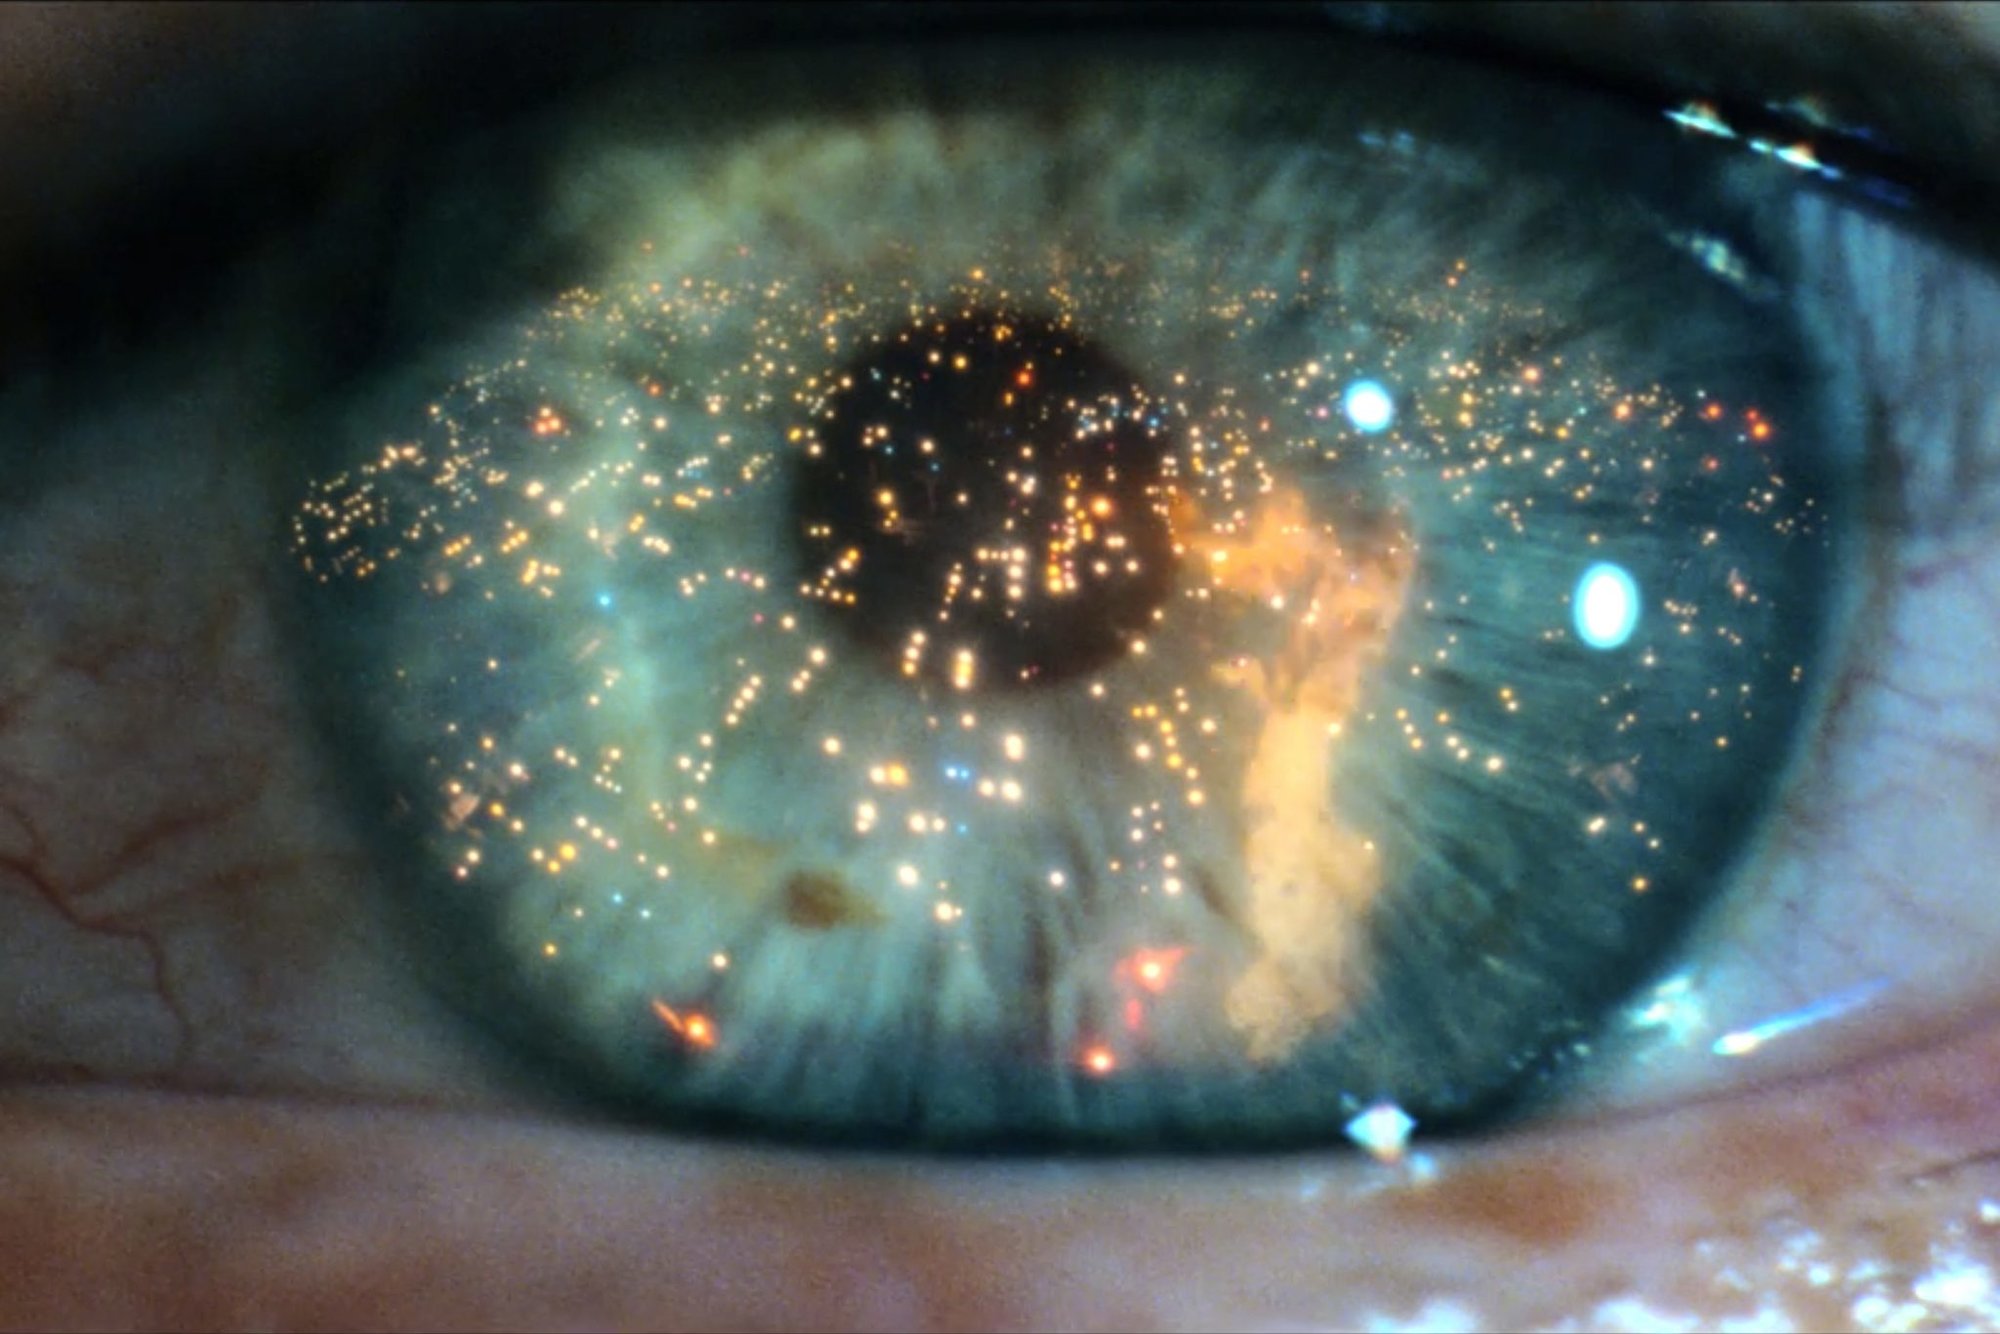 Blade Runner android eye